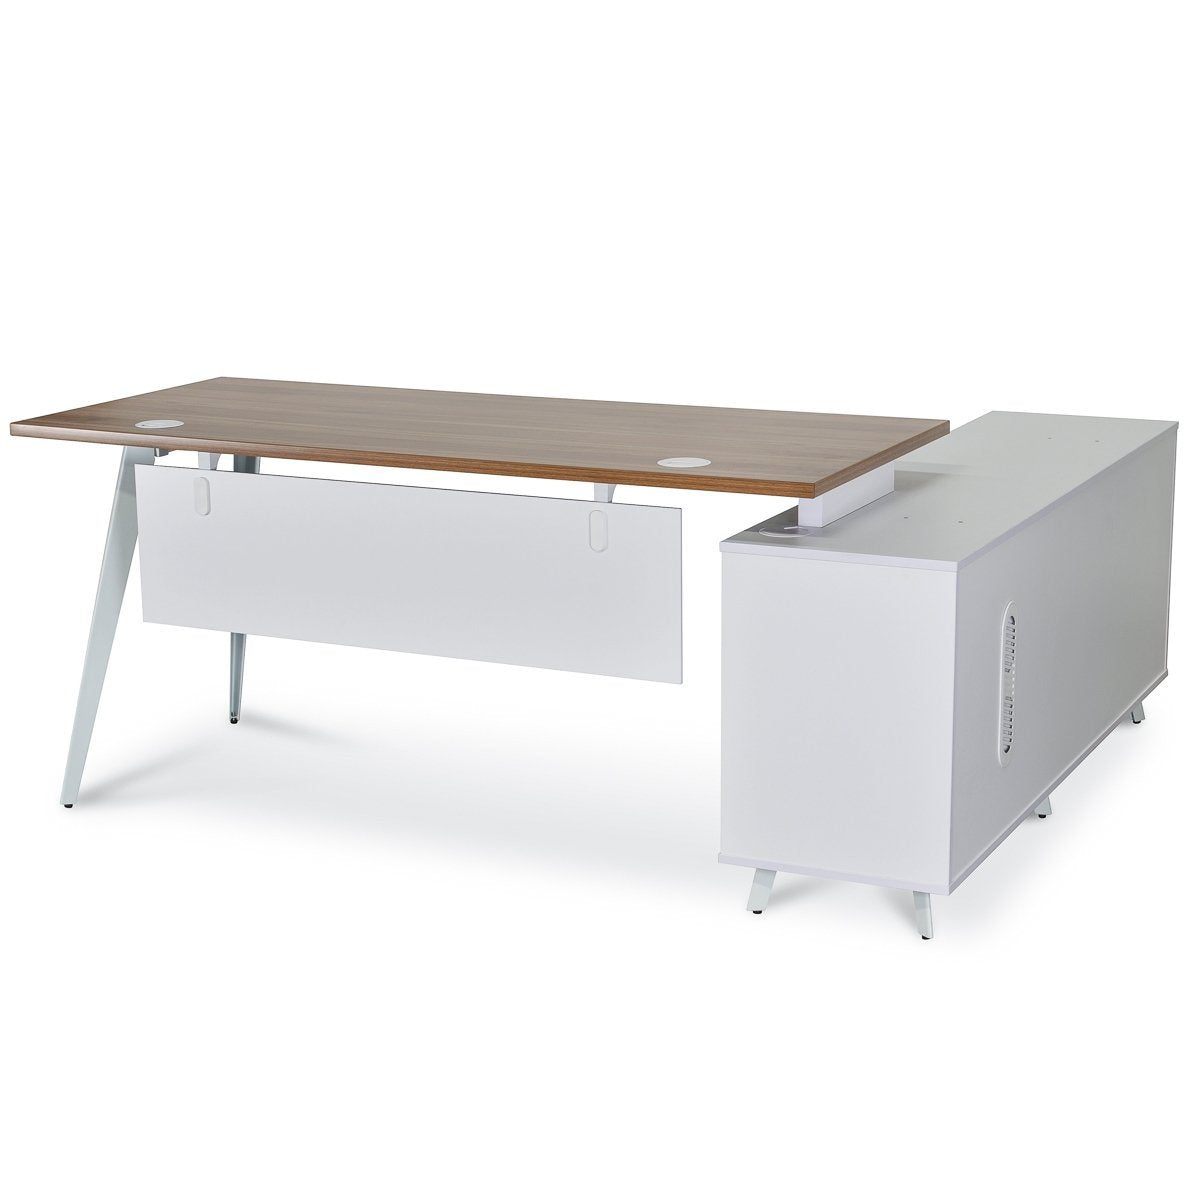 160cm Executive Office Desk - Left Return - Walnut